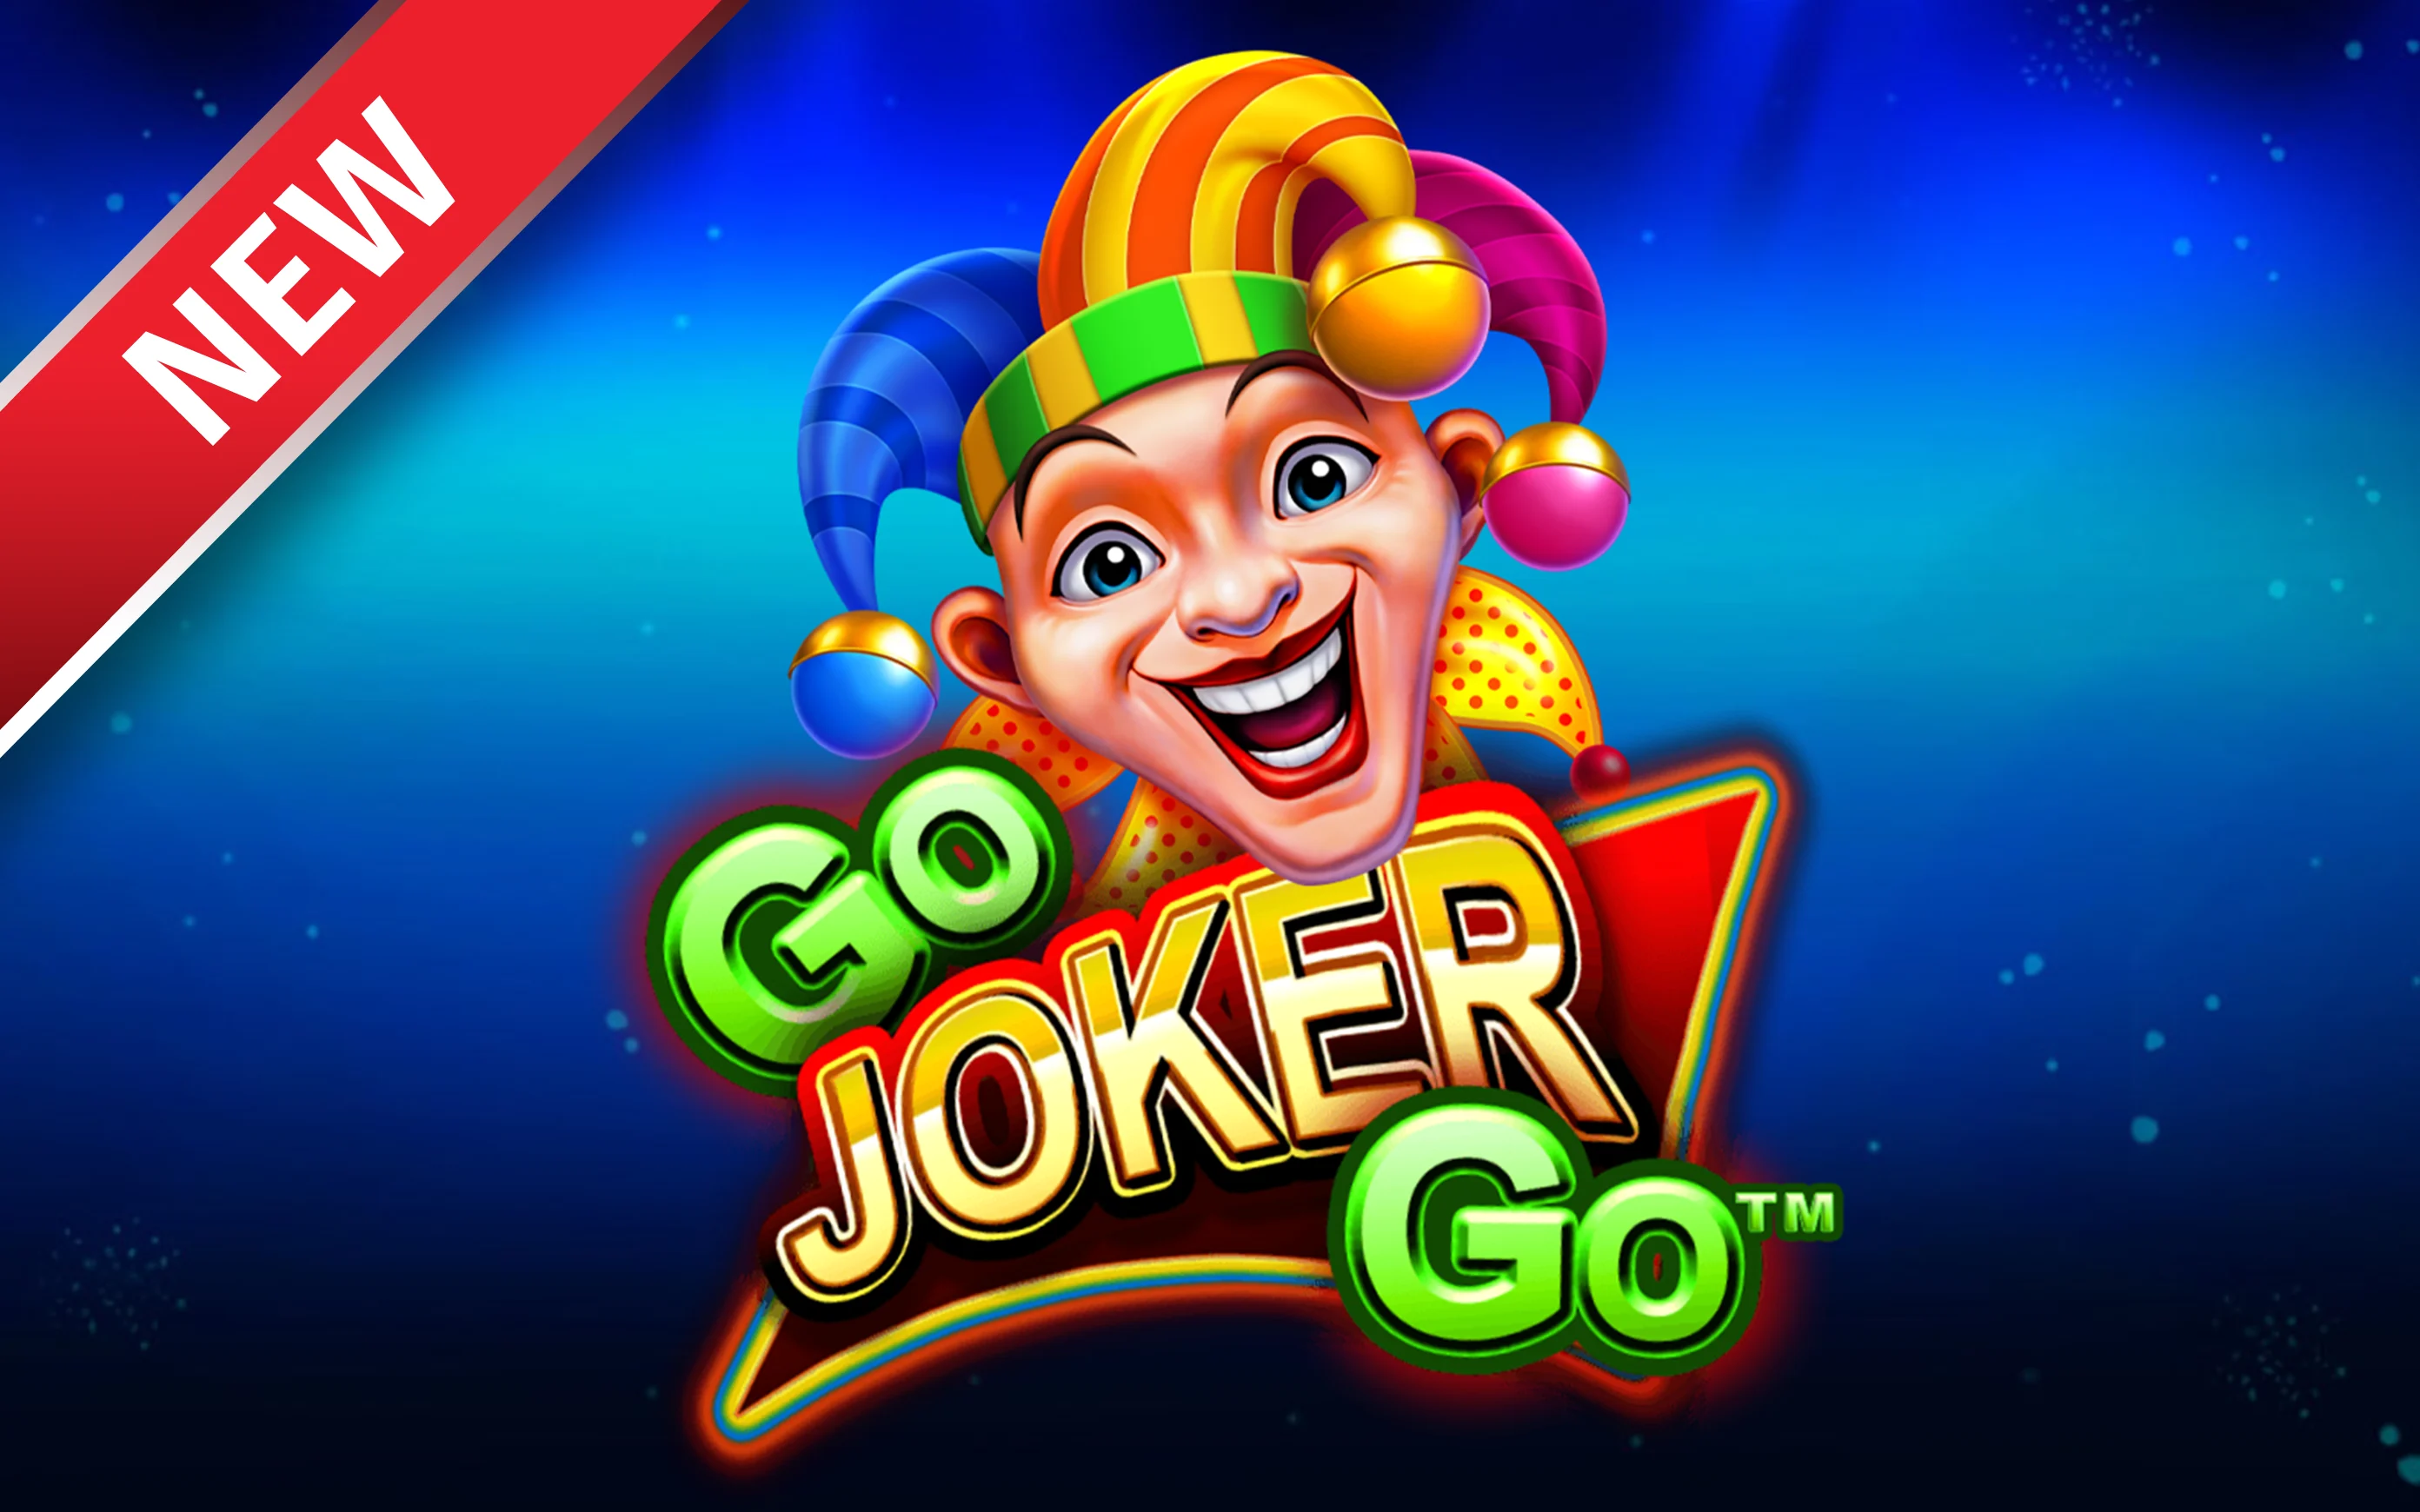 Juega a Go Joker Go en el casino en línea de Starcasino.be